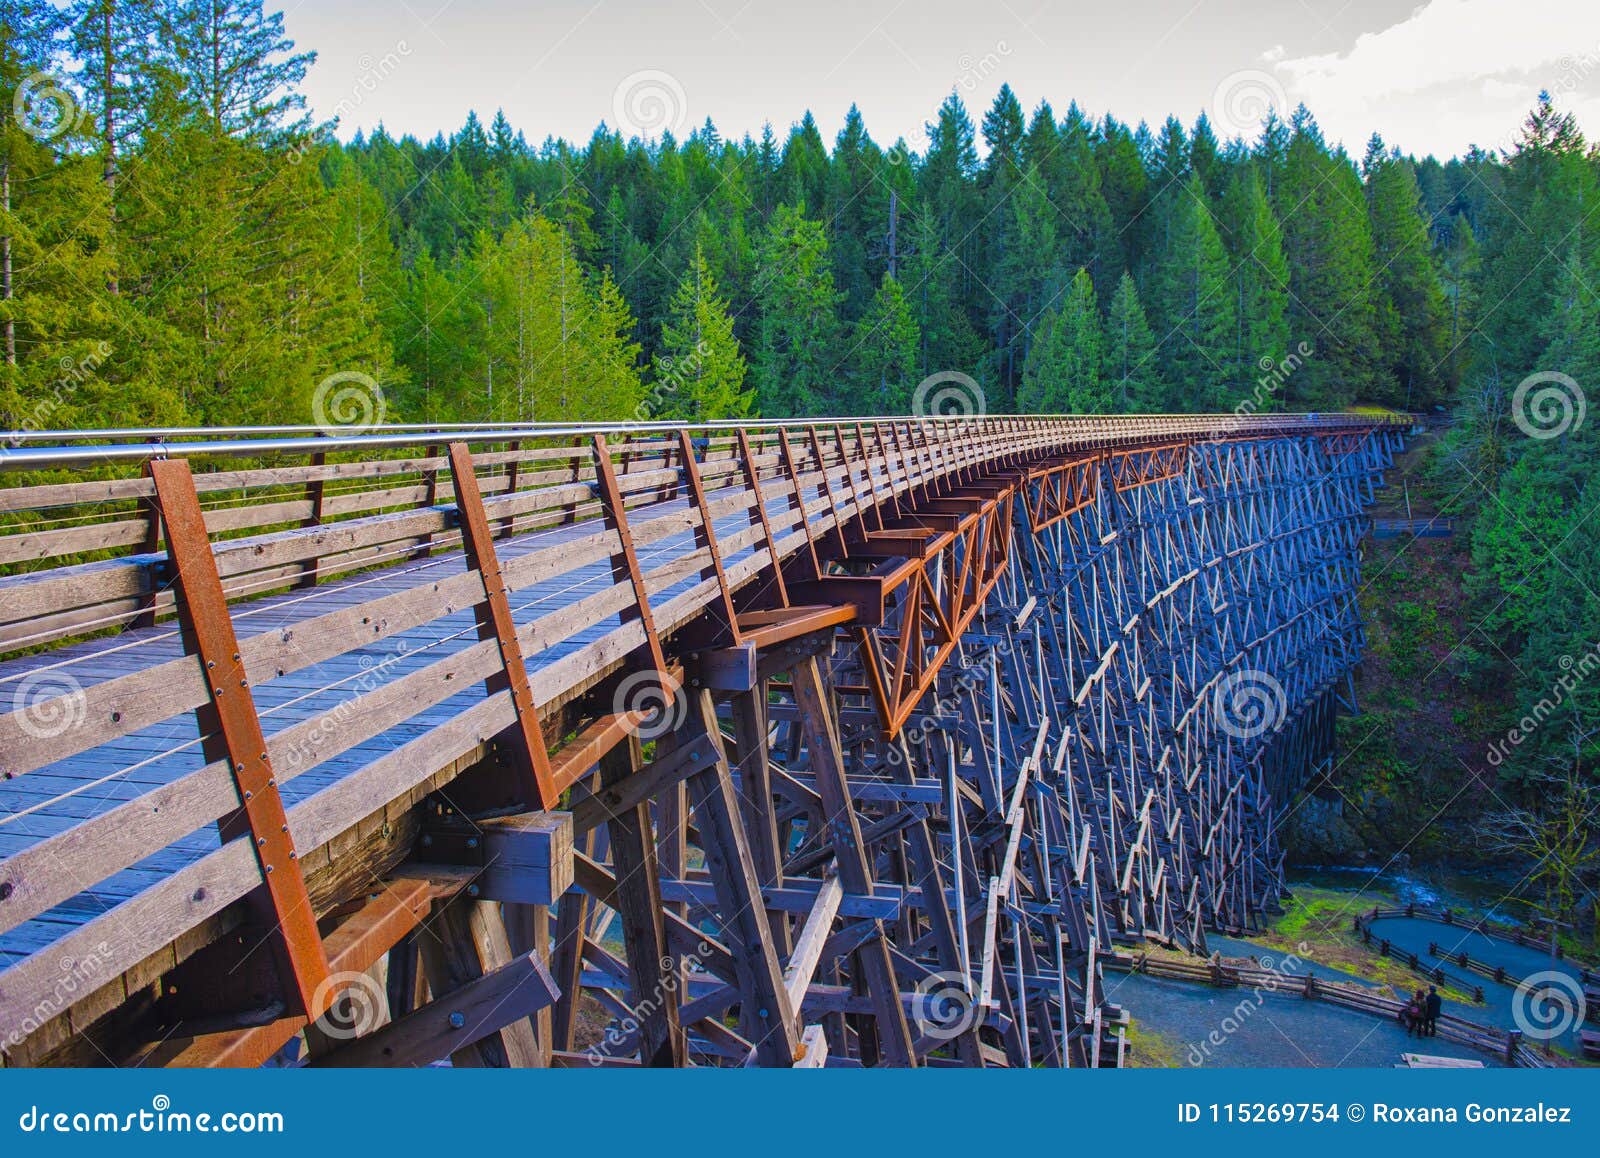 kinsol trestle railroad bridge in vancouver island, bc canada.